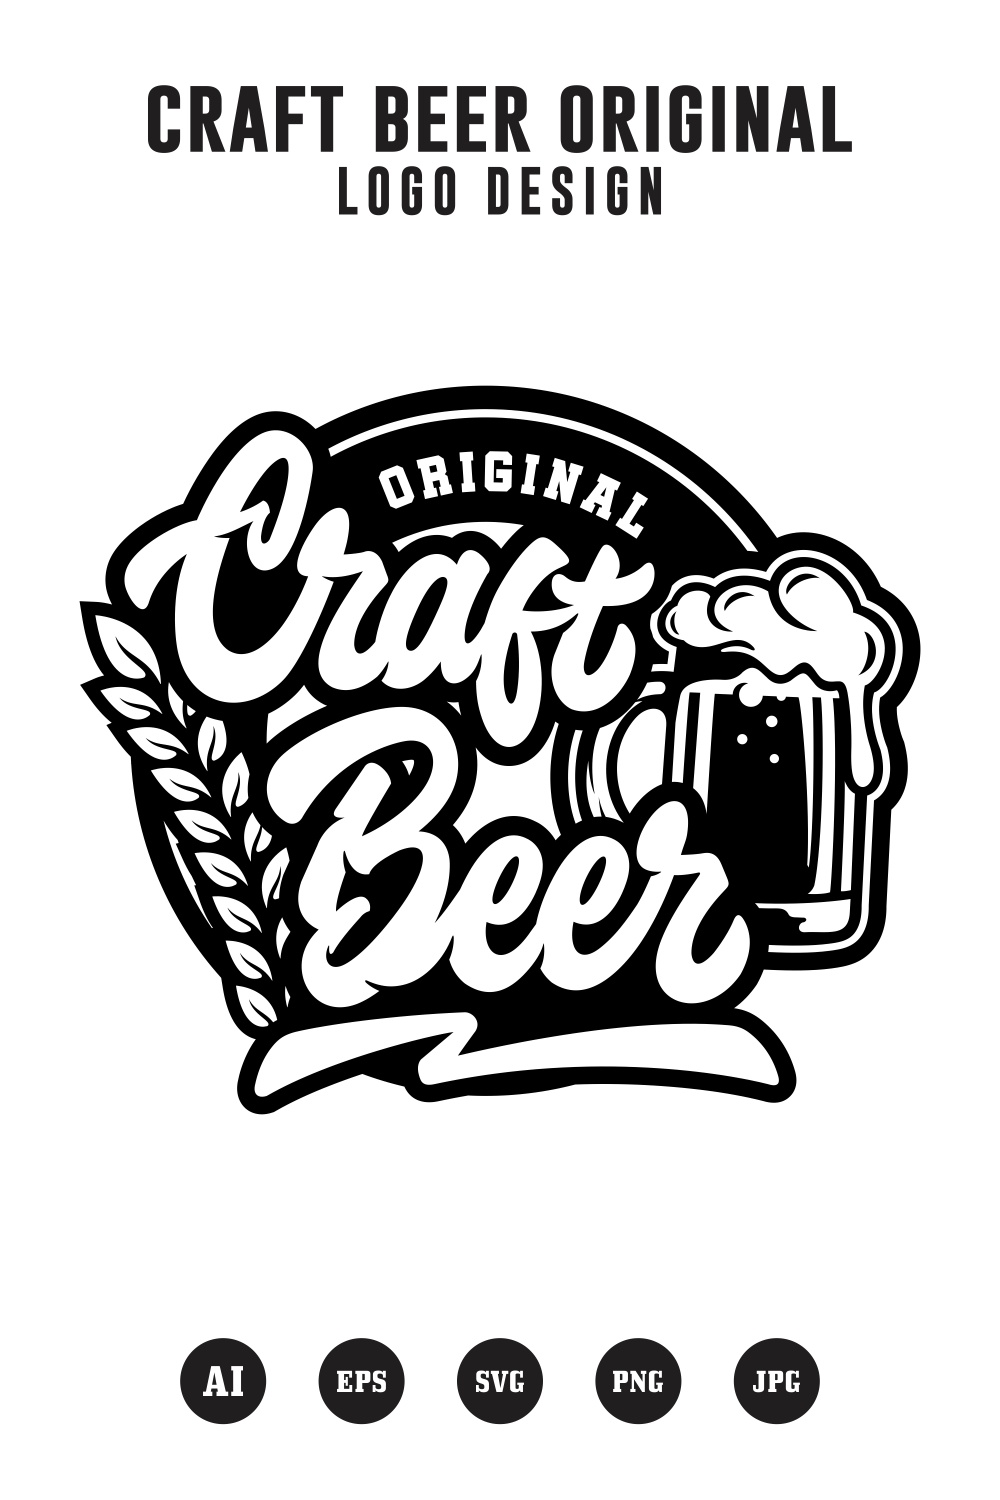 Craft Beer Original logo design - $4 pinterest preview image.